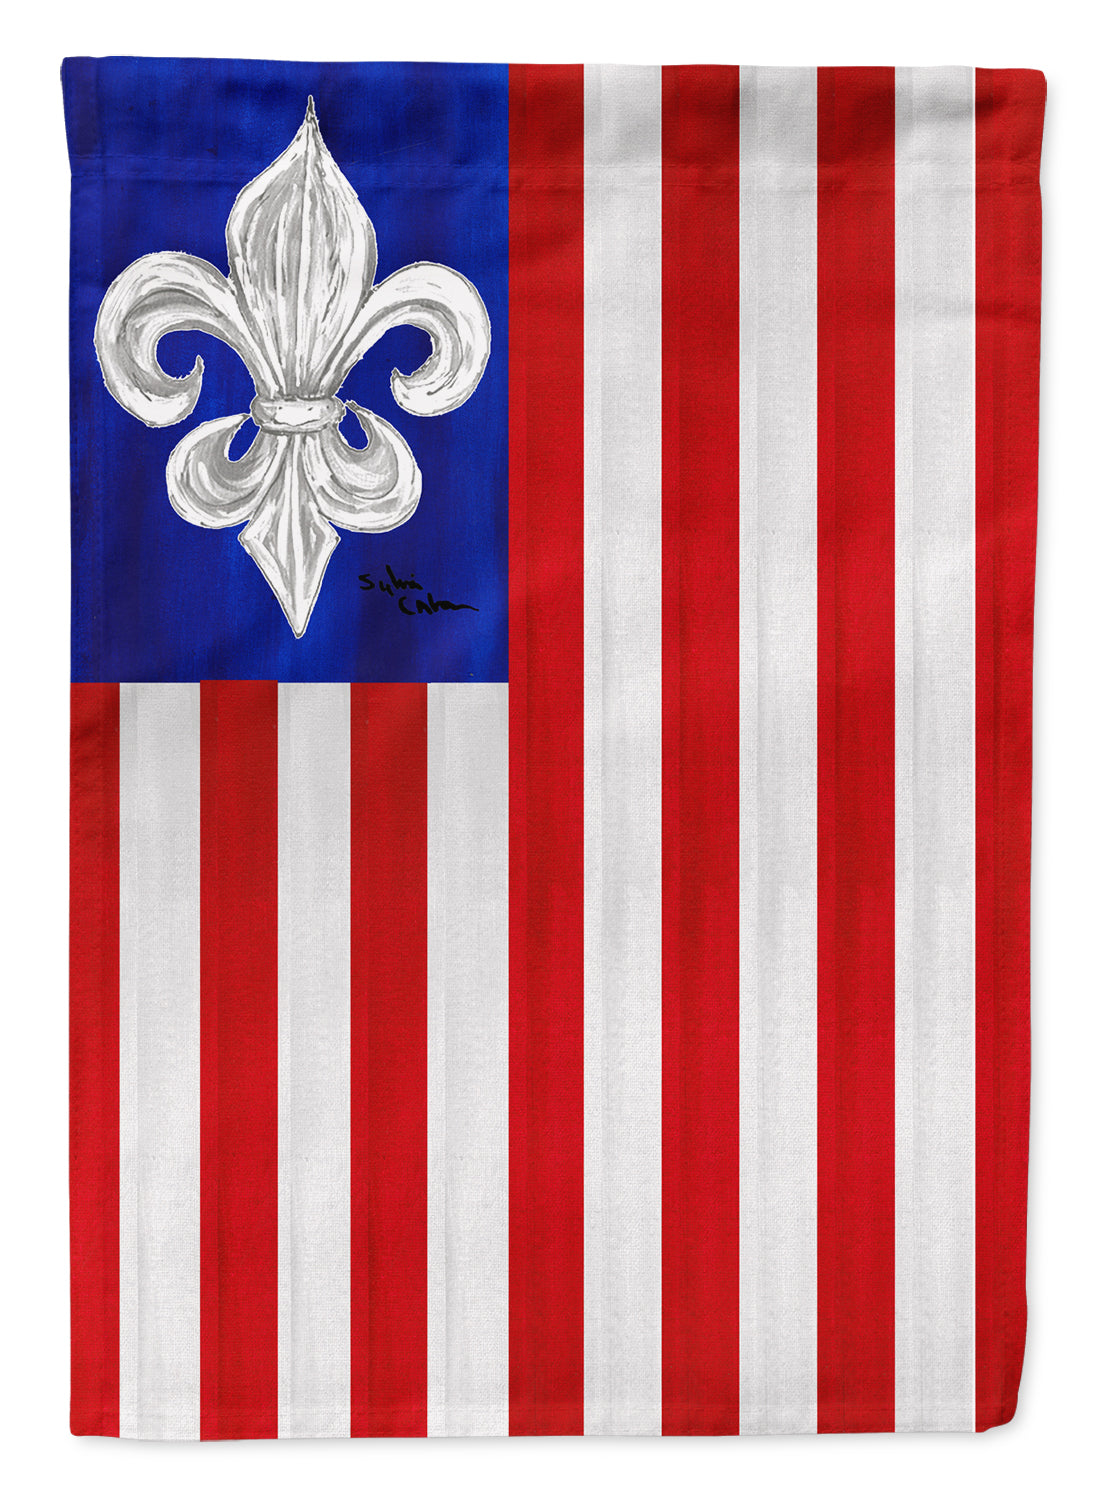 USA Fleur de lis Patriotic American Flag Canvas House Size  the-store.com.